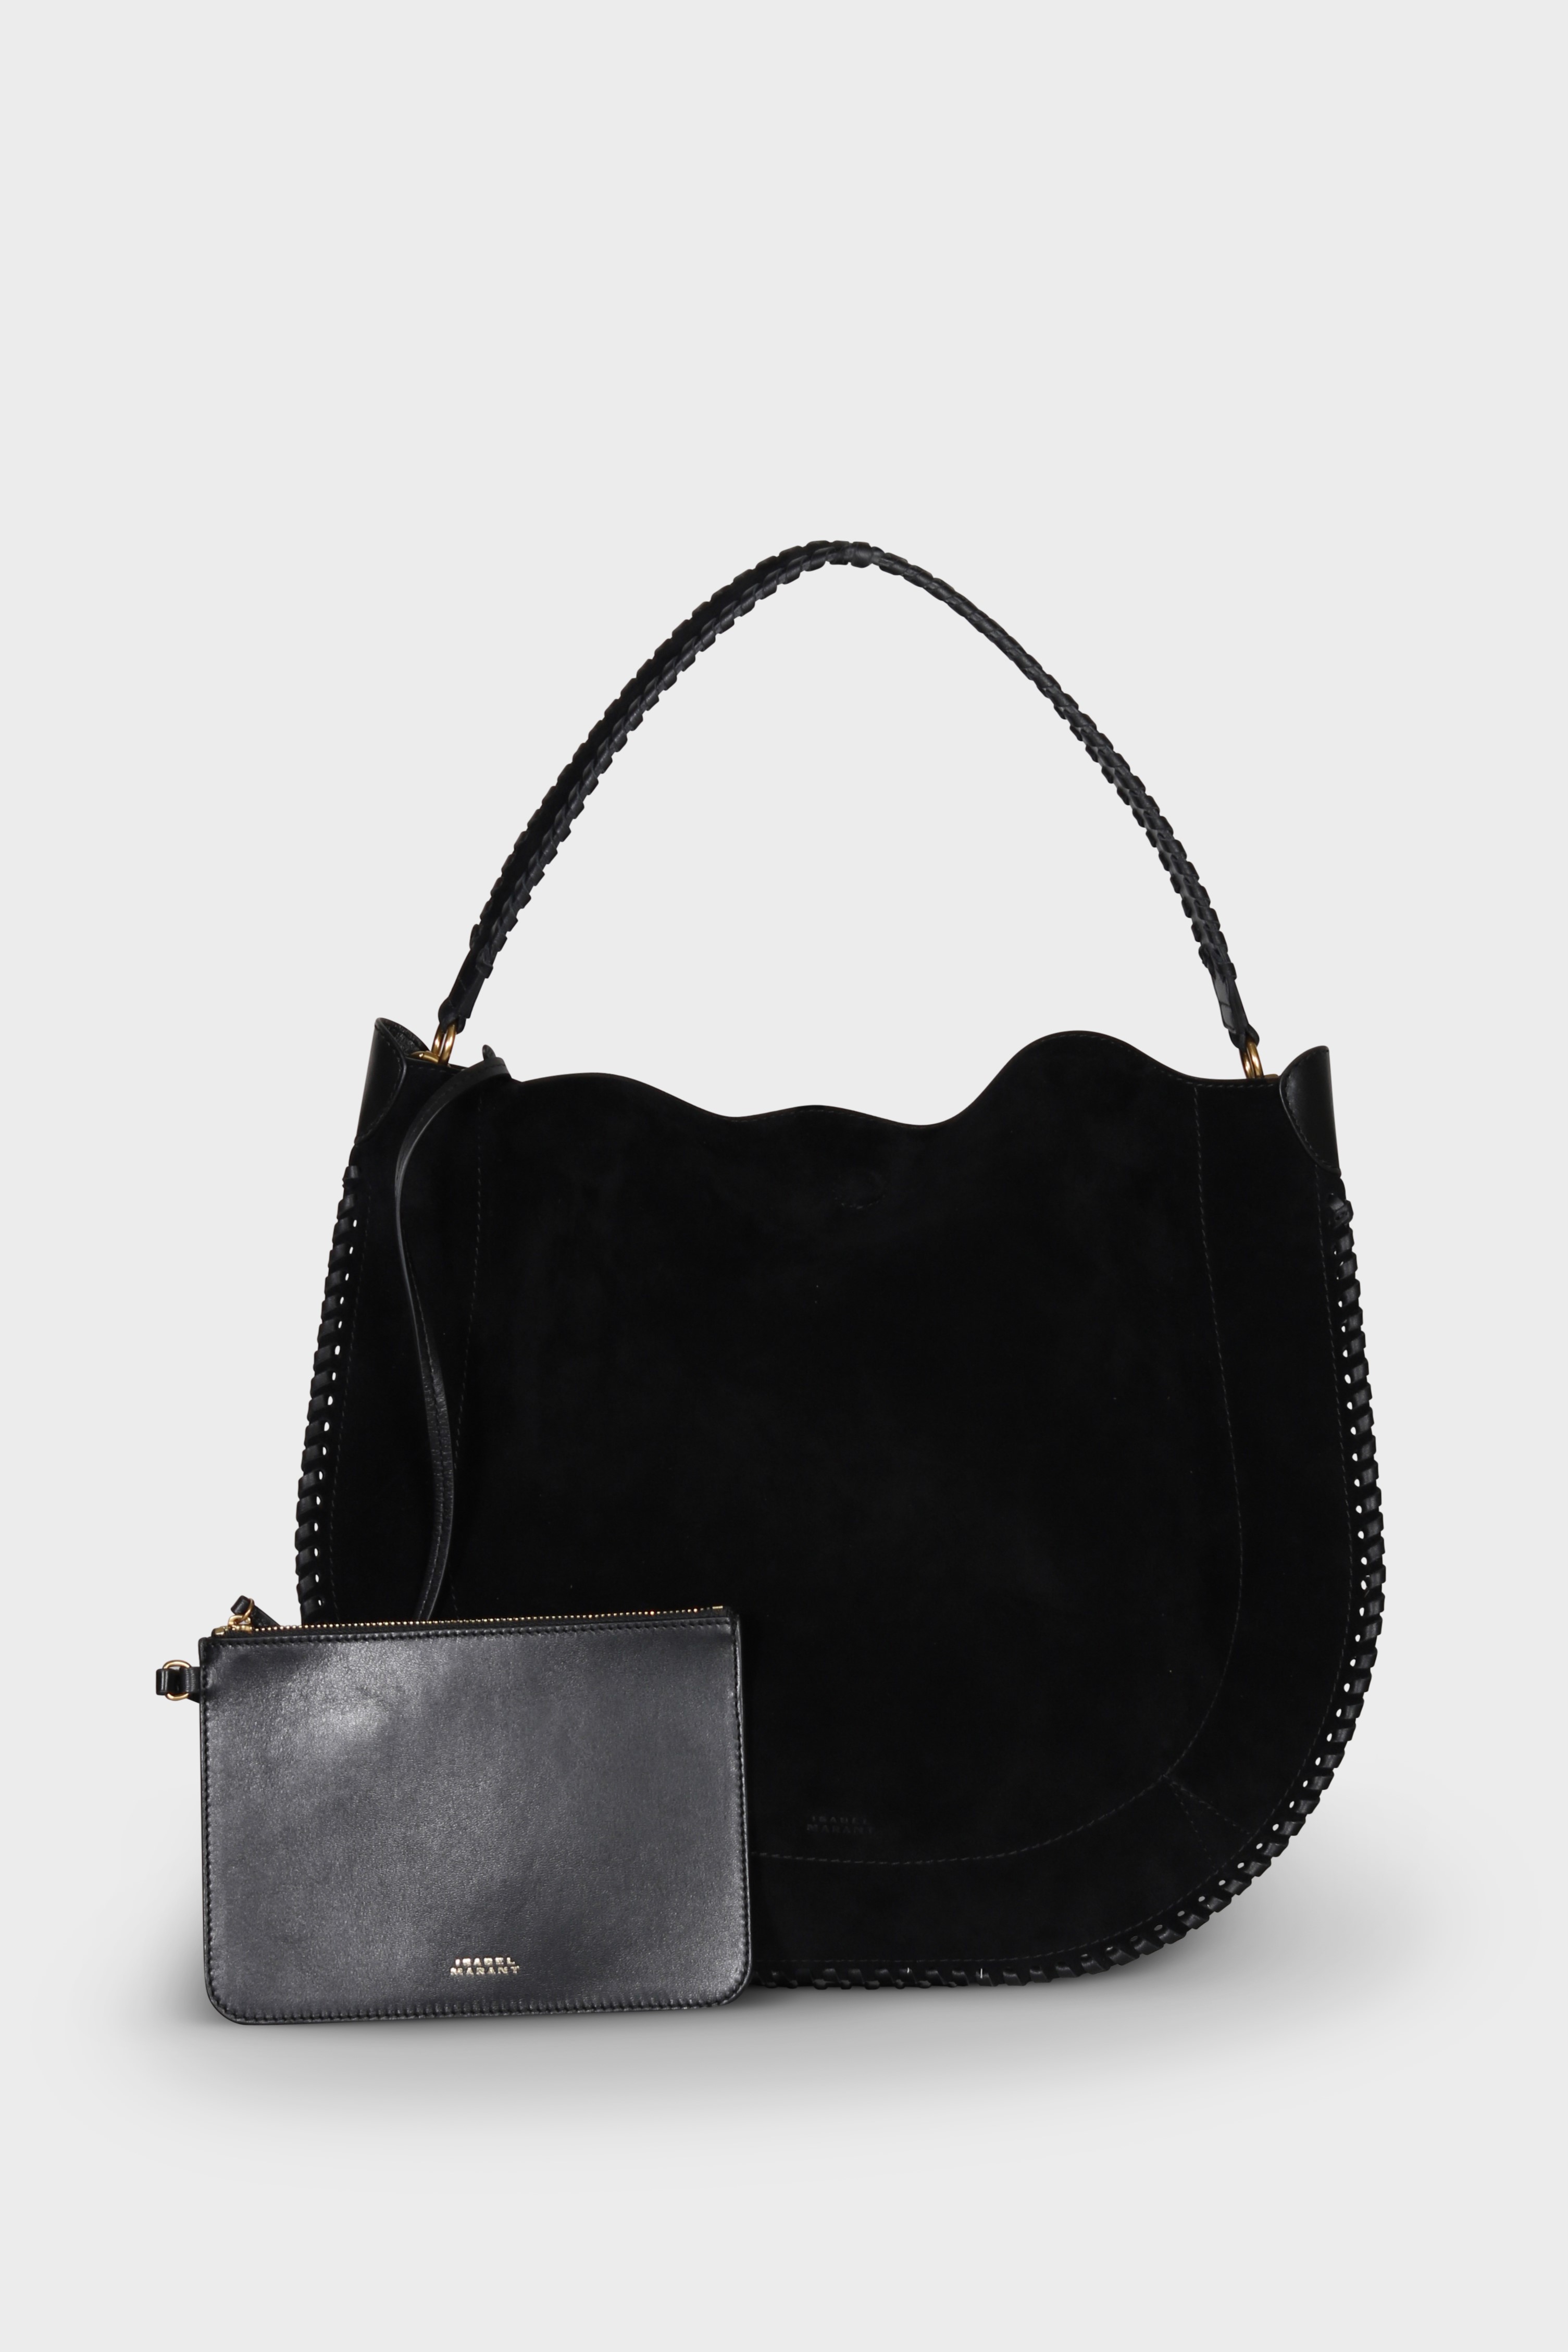 ISABEL MARANT Oskan Hobo Soft Shoulder Bag in Black Velvet